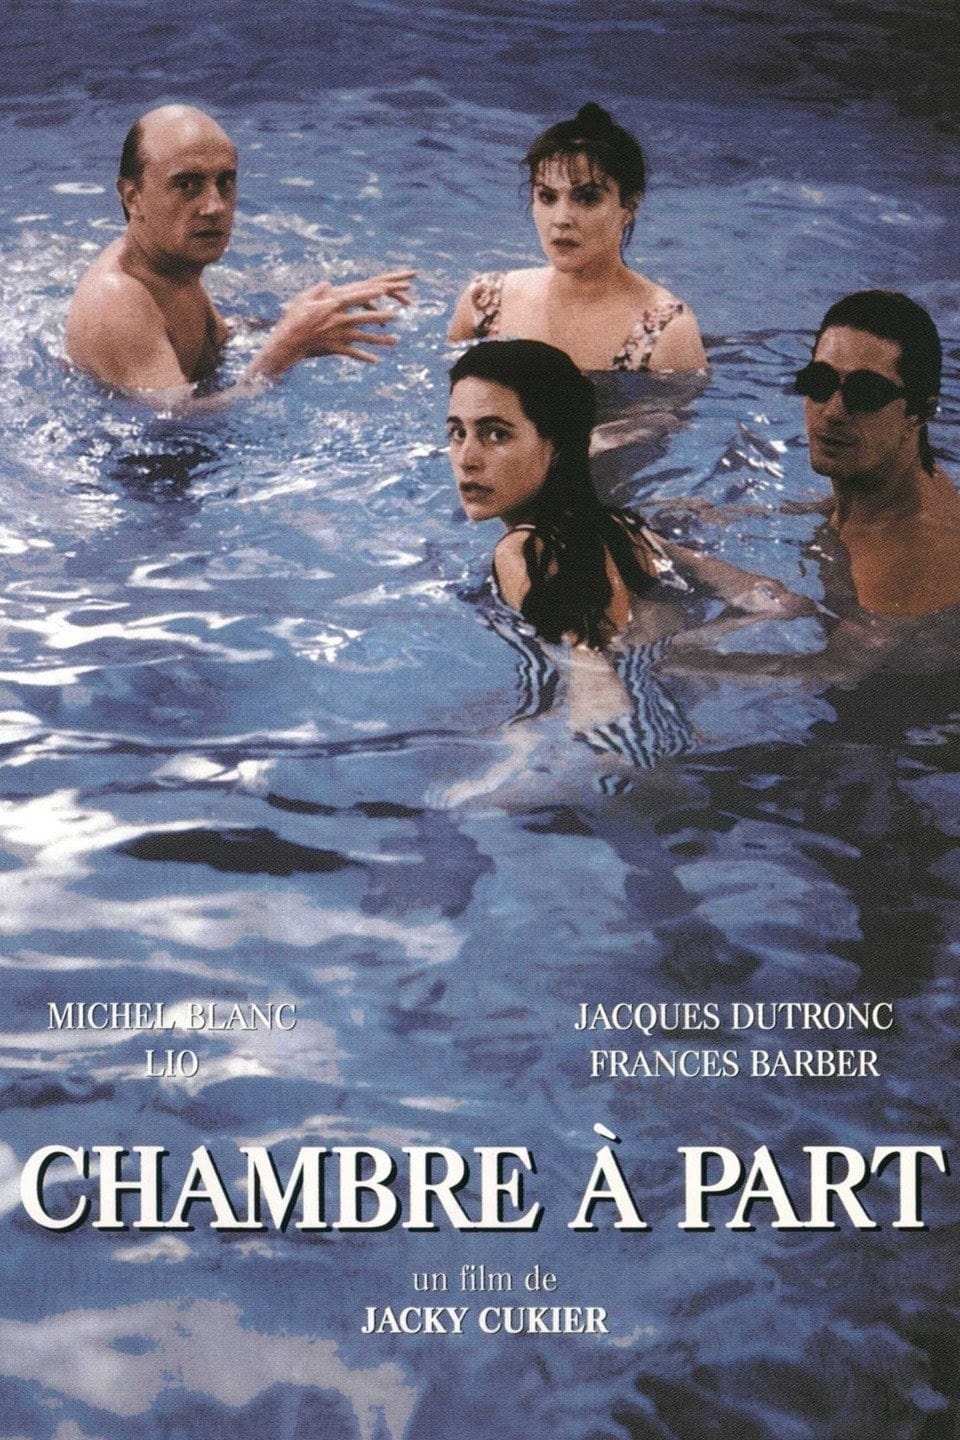 Chambre à part (1989)